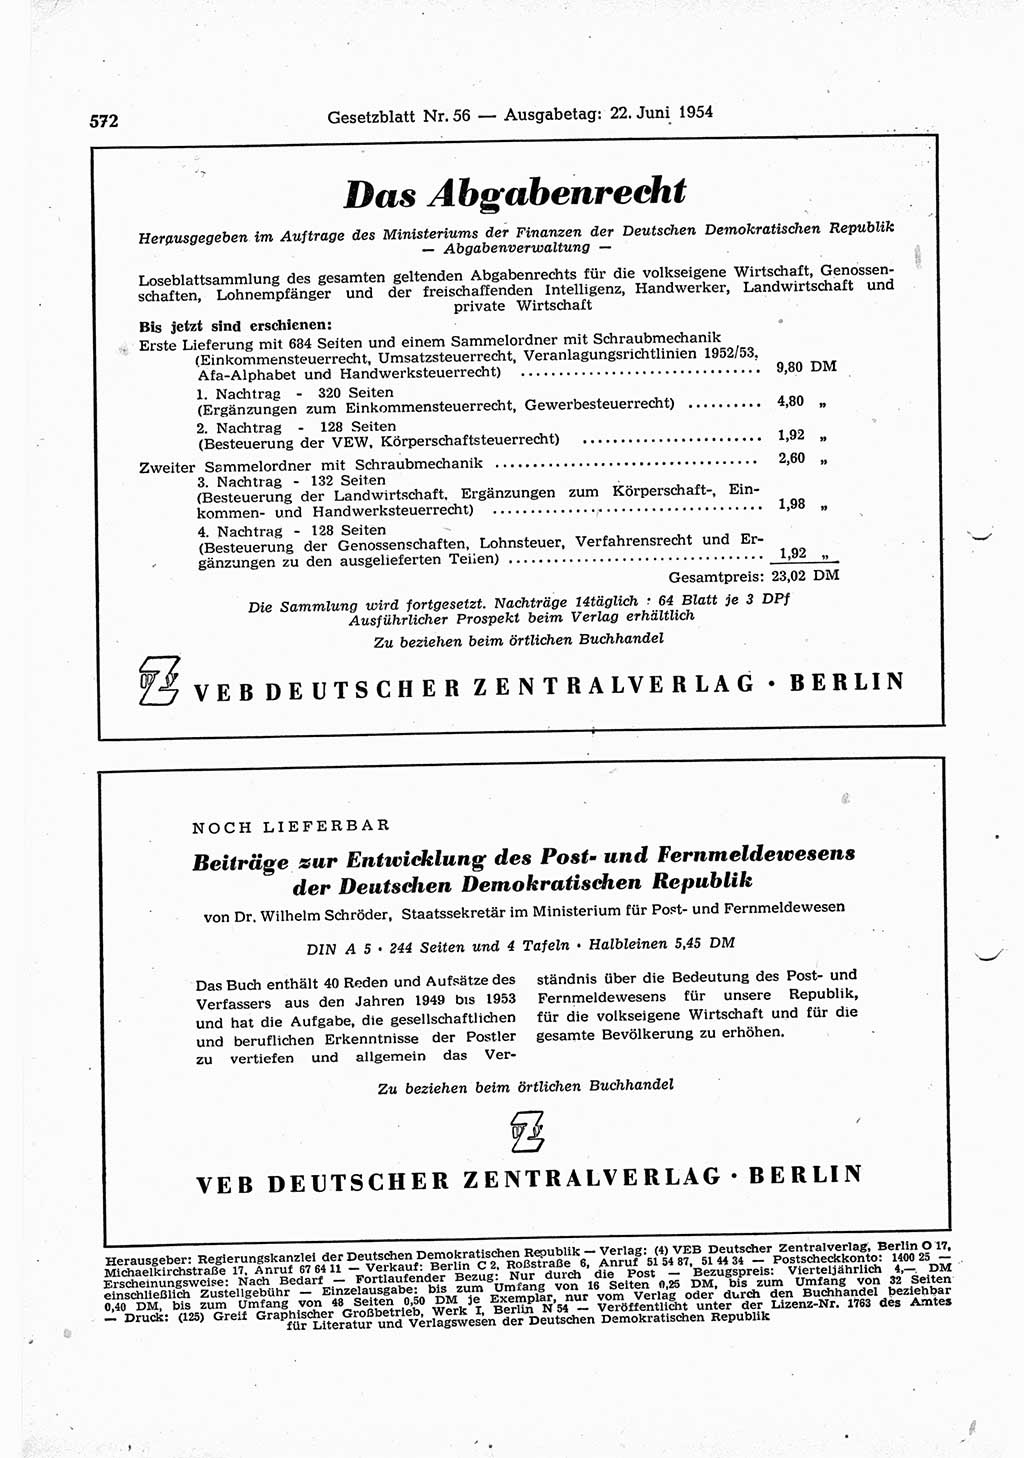 Gesetzblatt (GBl.) der Deutschen Demokratischen Republik (DDR) 1954, Seite 572 (GBl. DDR 1954, S. 572)